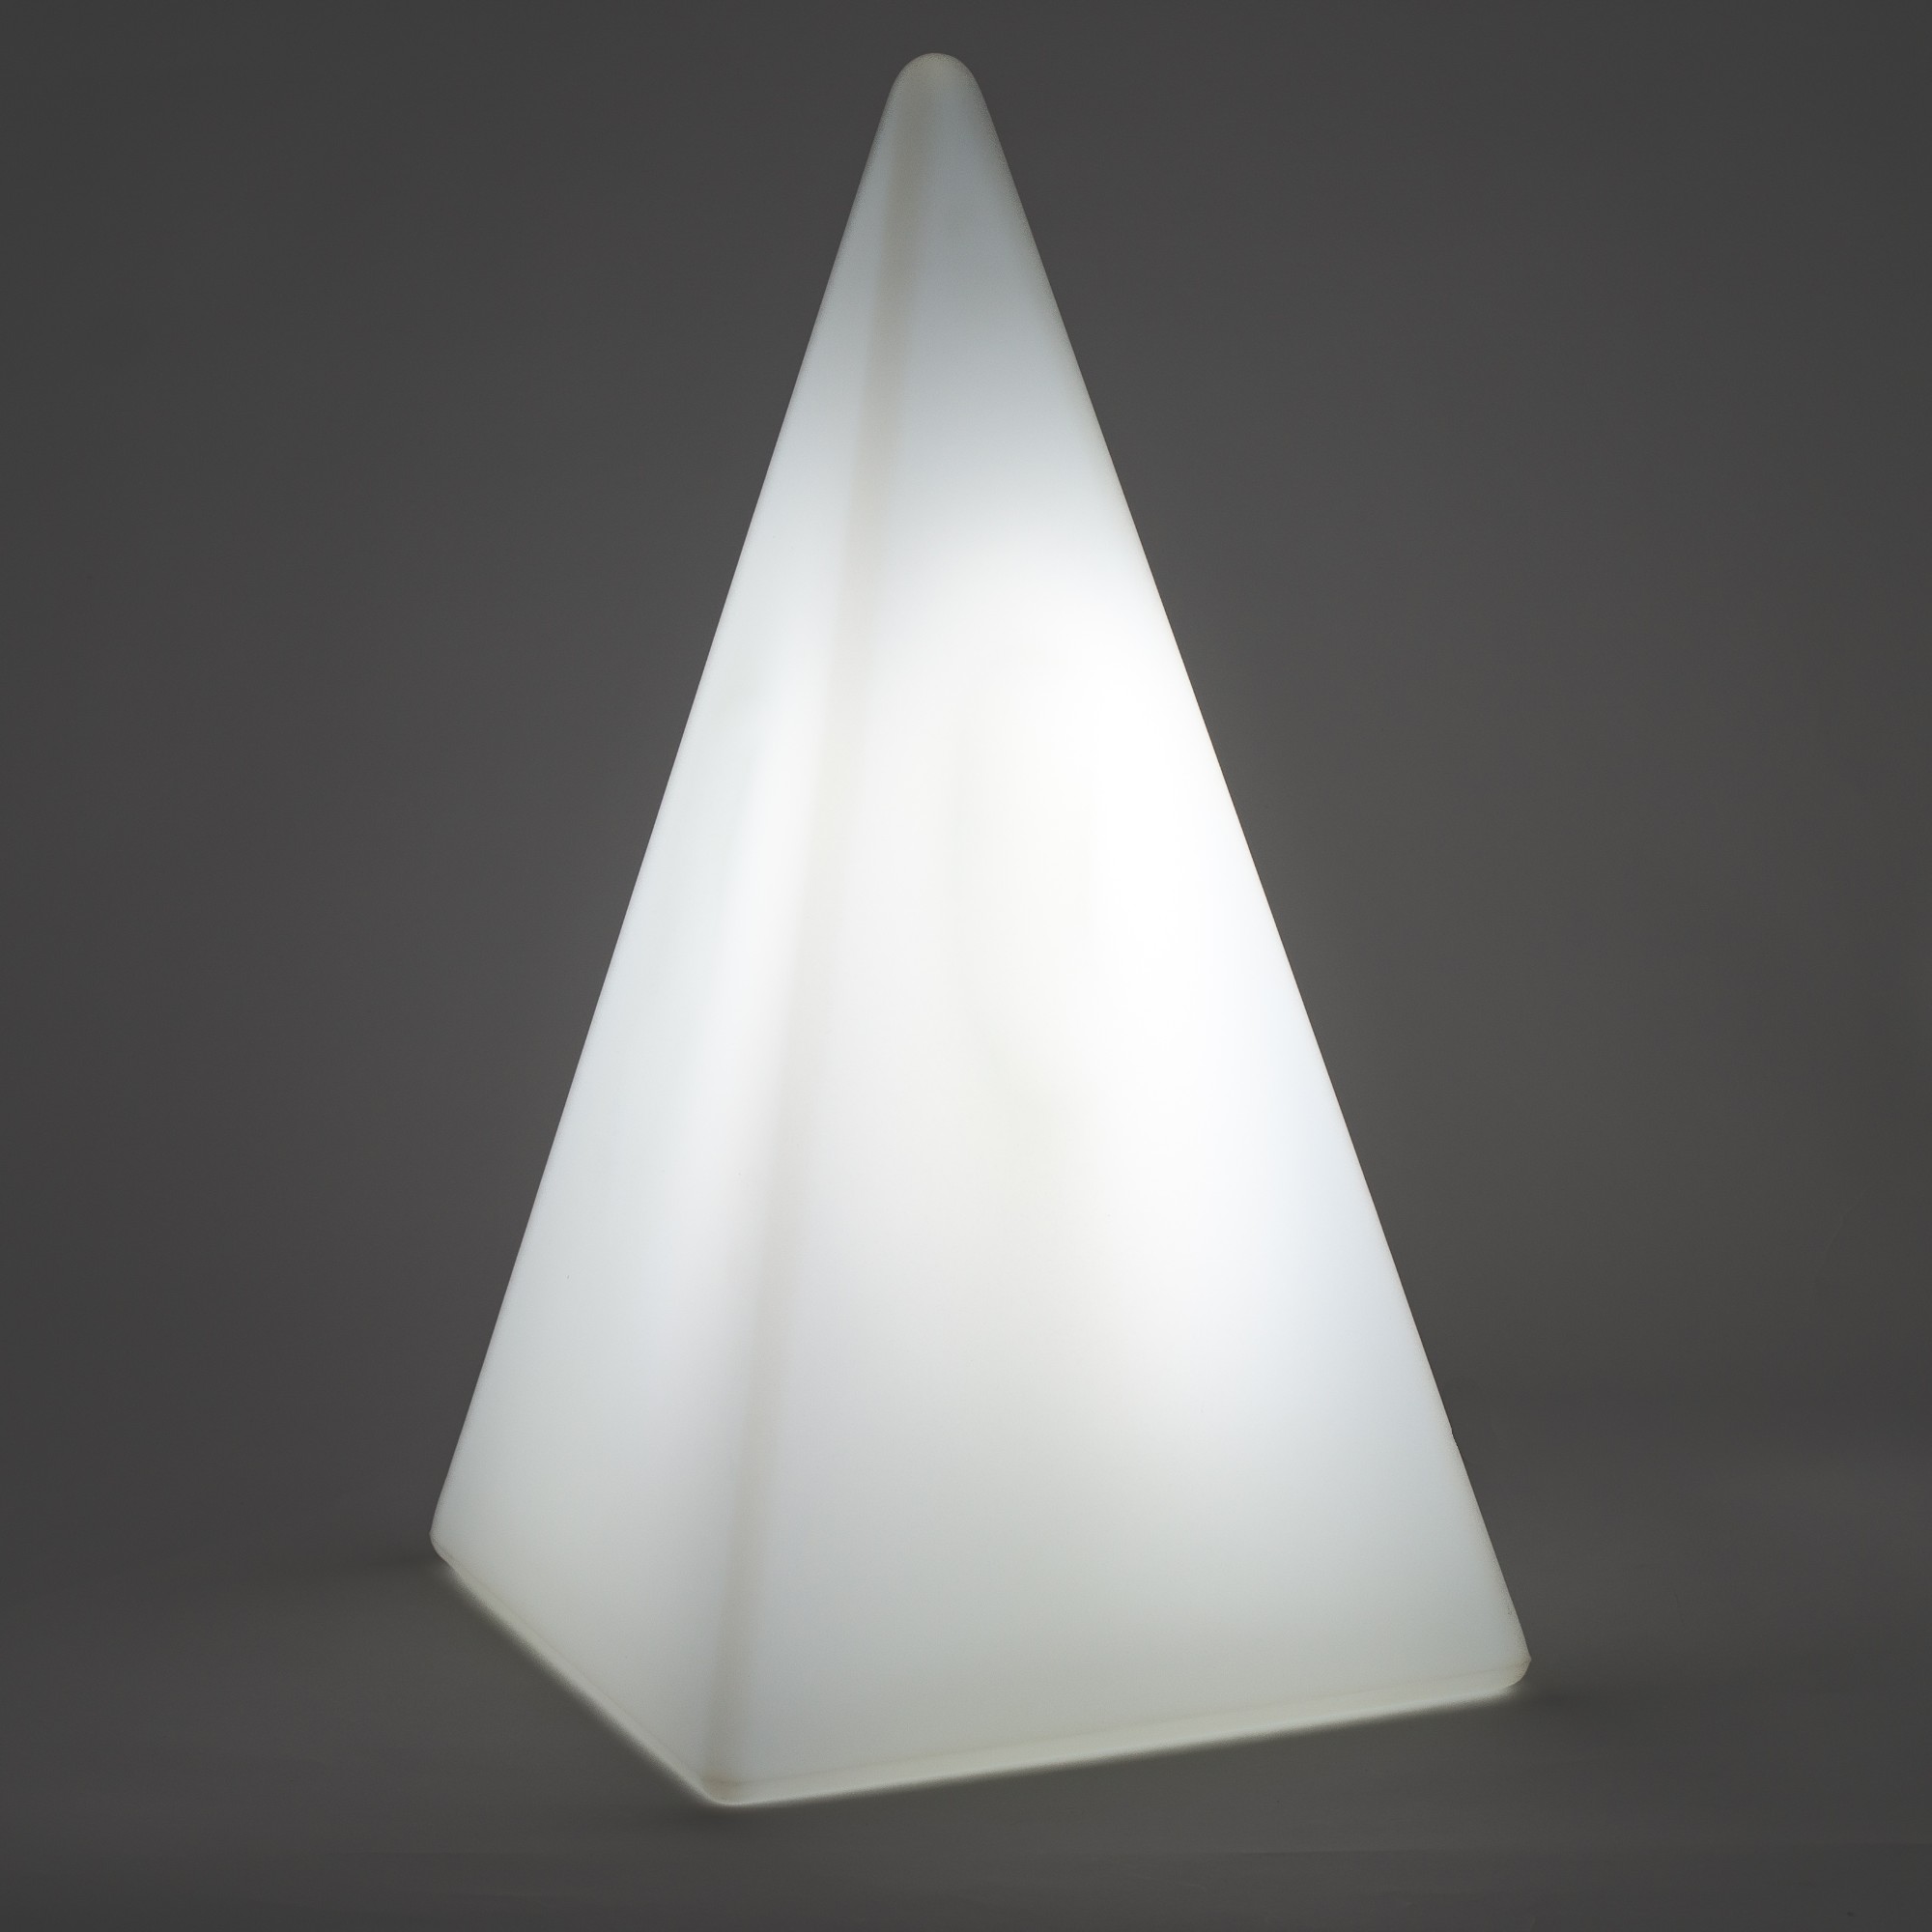 70205 Standleuchte Pyramide 54 cm der Firma EPSTEIN Design Leuchten